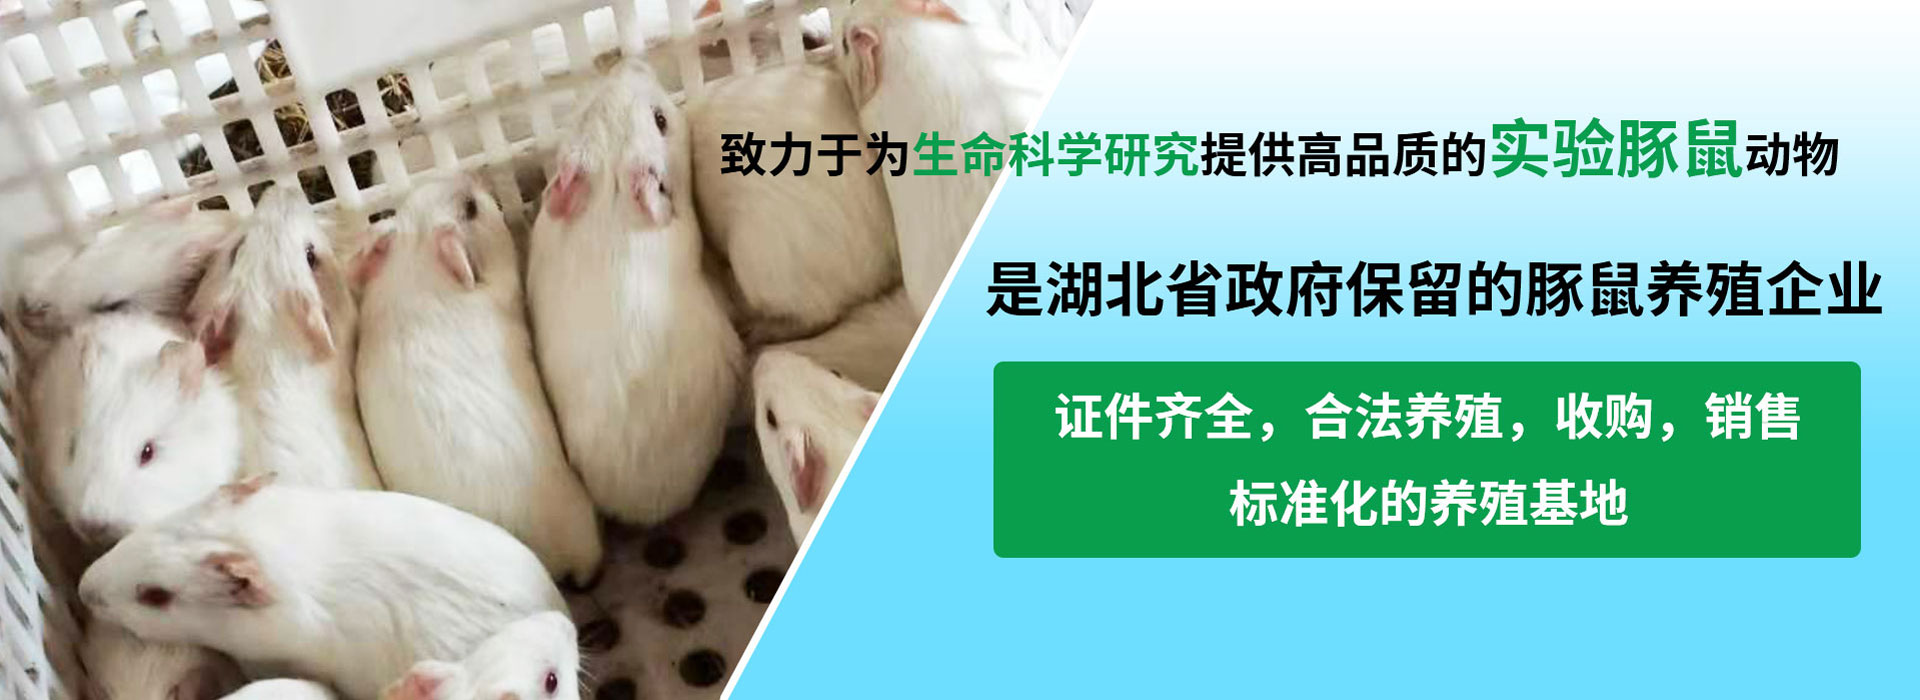 實驗白豚鼠養殖,白豚鼠養殖培訓,白豚鼠養殖技術